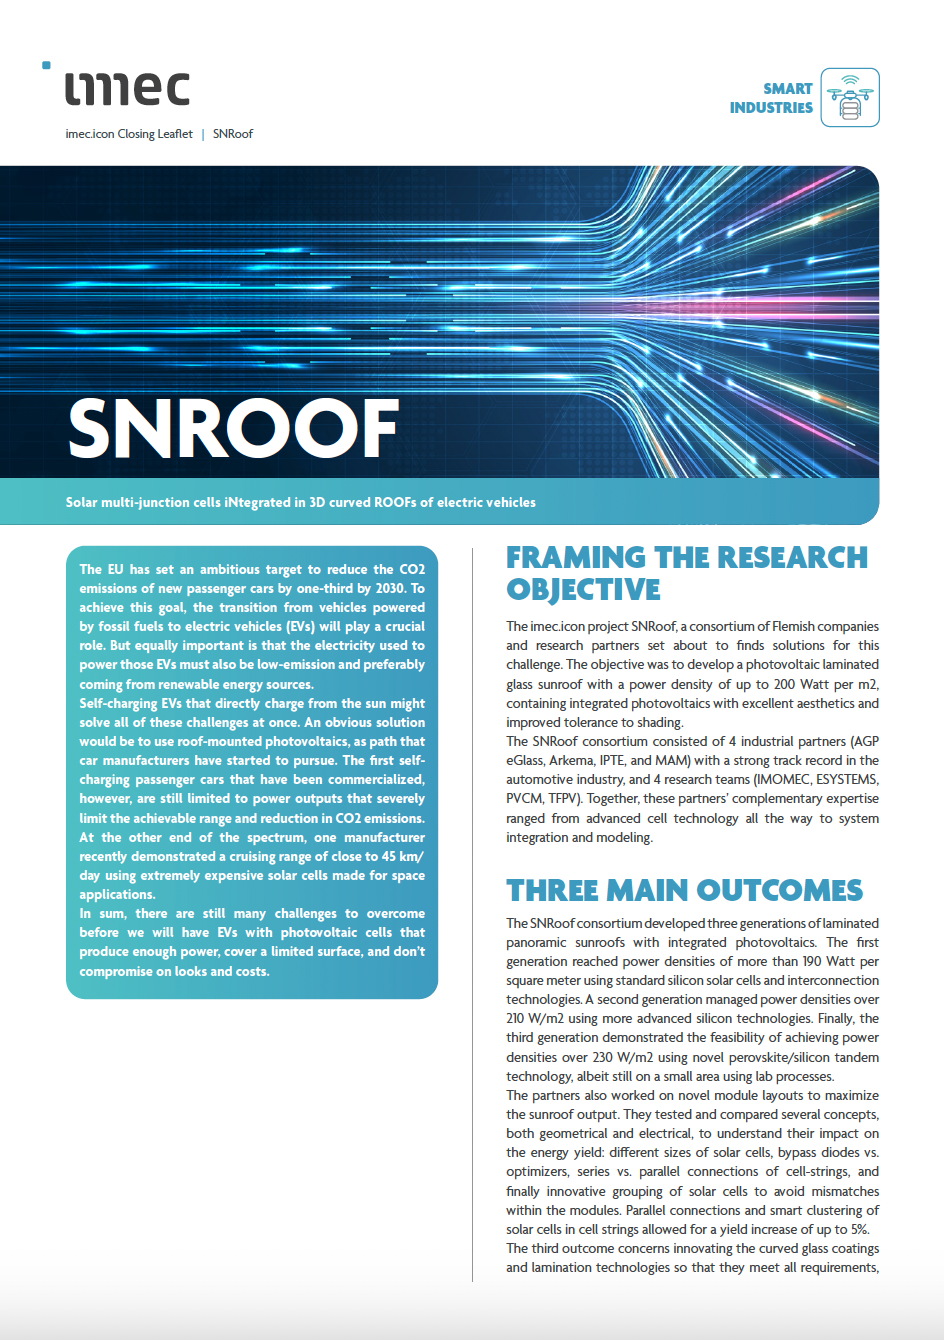 SNROOF leaflet